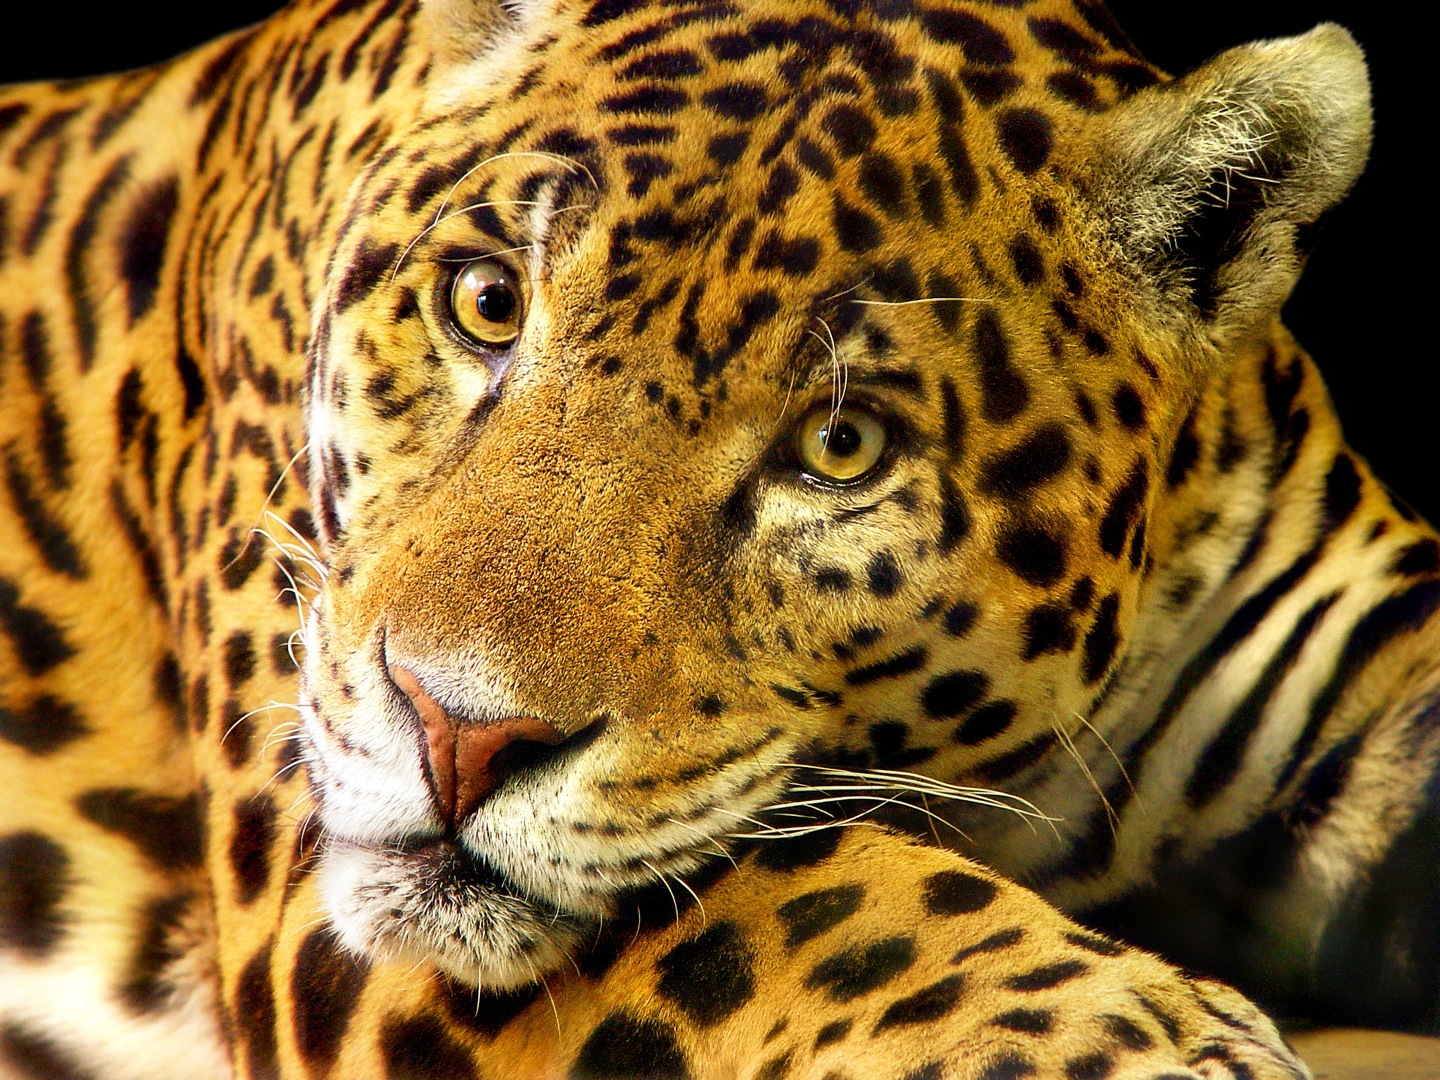 Le jaguar brésilien est en grand danger : en 15 ans, les populations ont perdu 80 % de leurs effectifs ! © Tambako the jaguar, Fotopedia, cc by nd 2.0